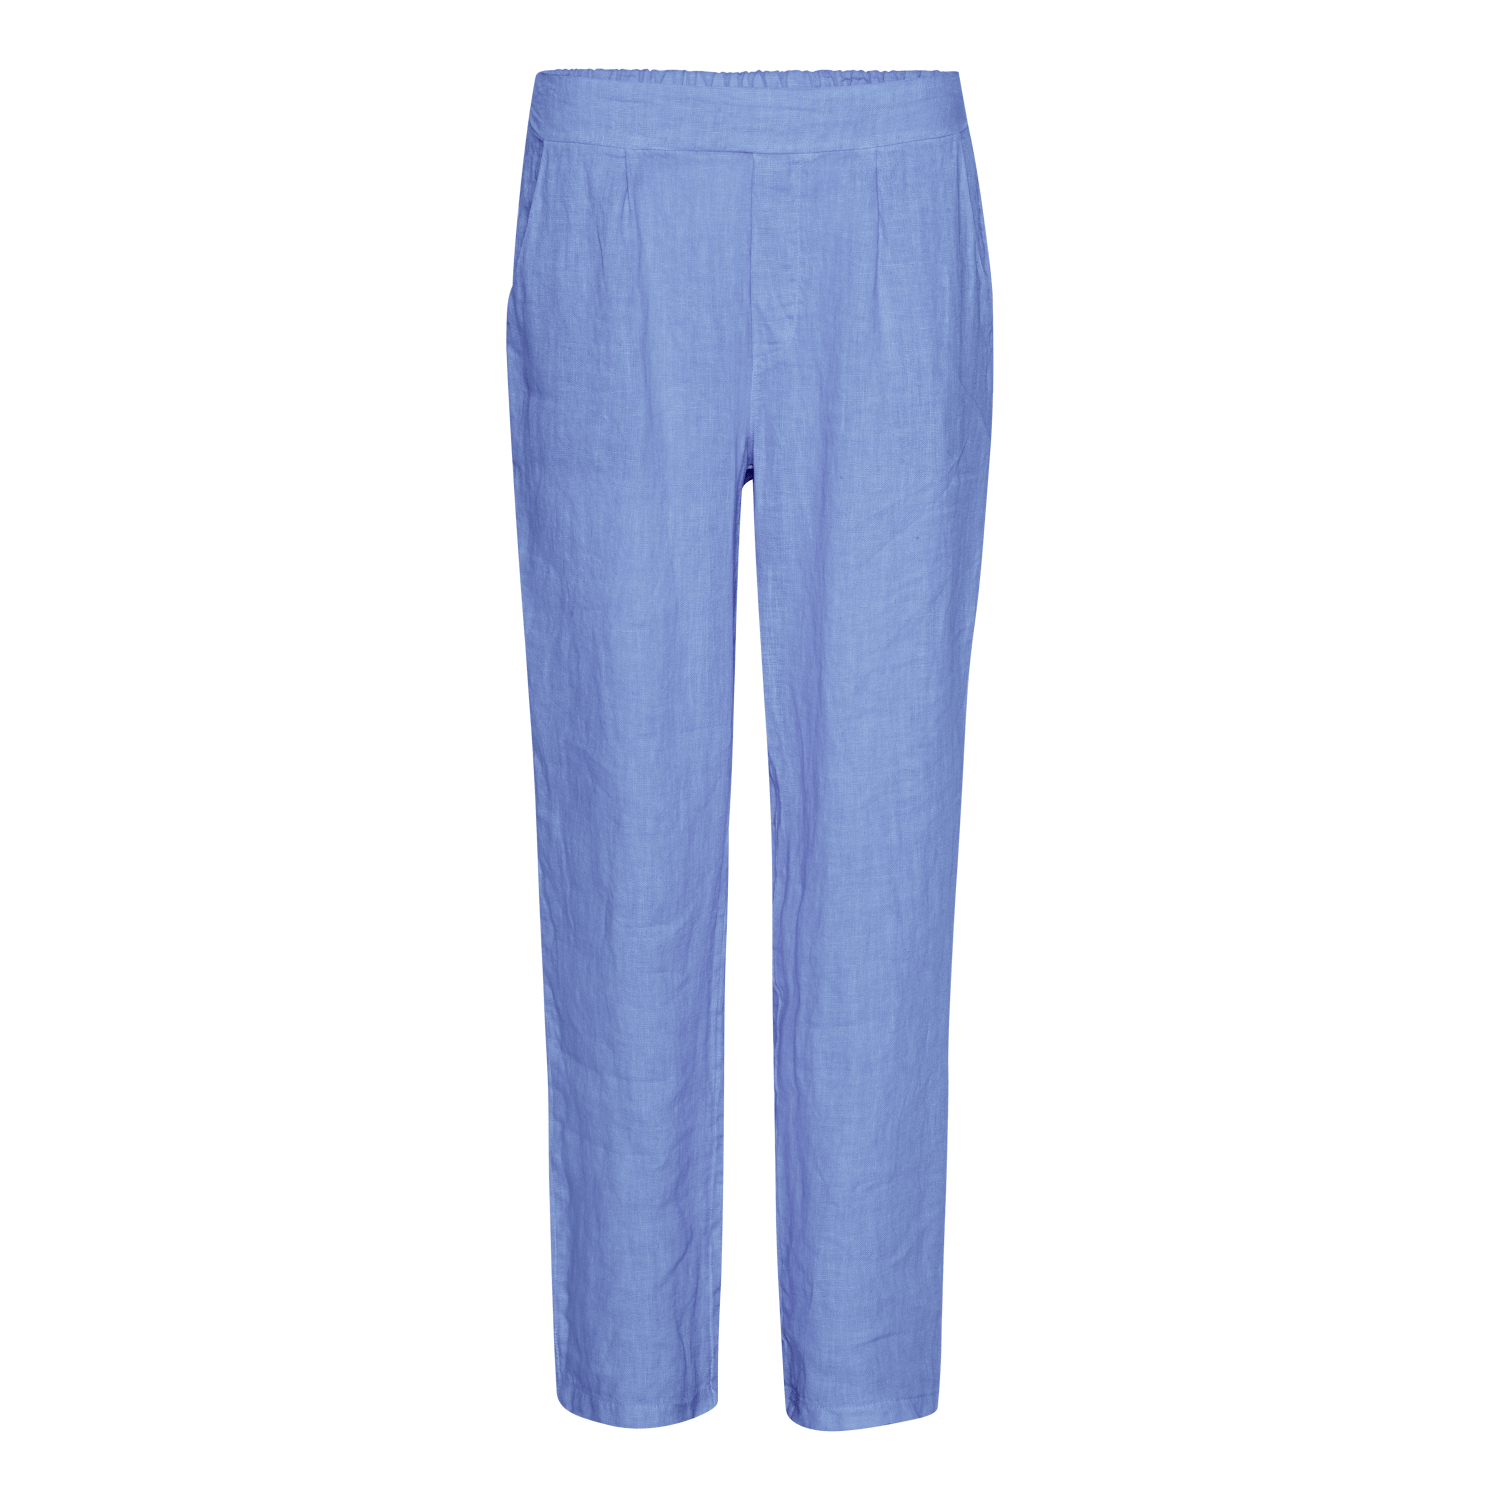 Linen Pants - Jeans - Amaze Cph - Jeans - S/M